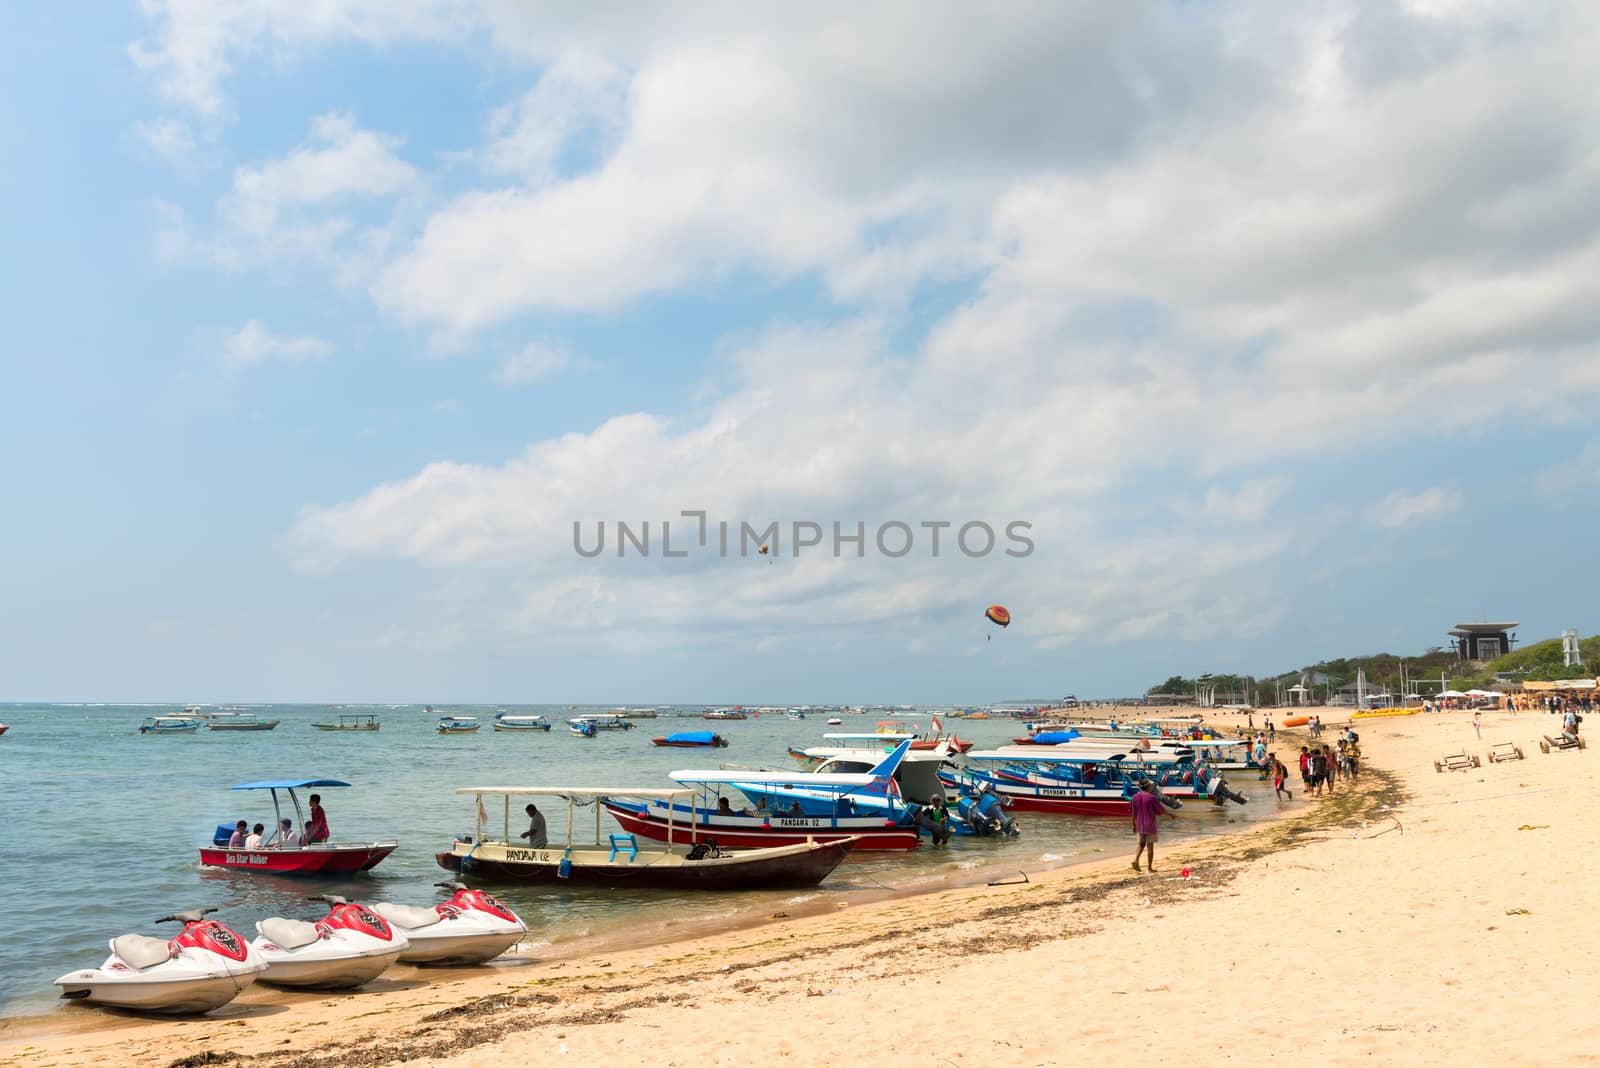 Tourist watersport beach on Bali by iryna_rasko